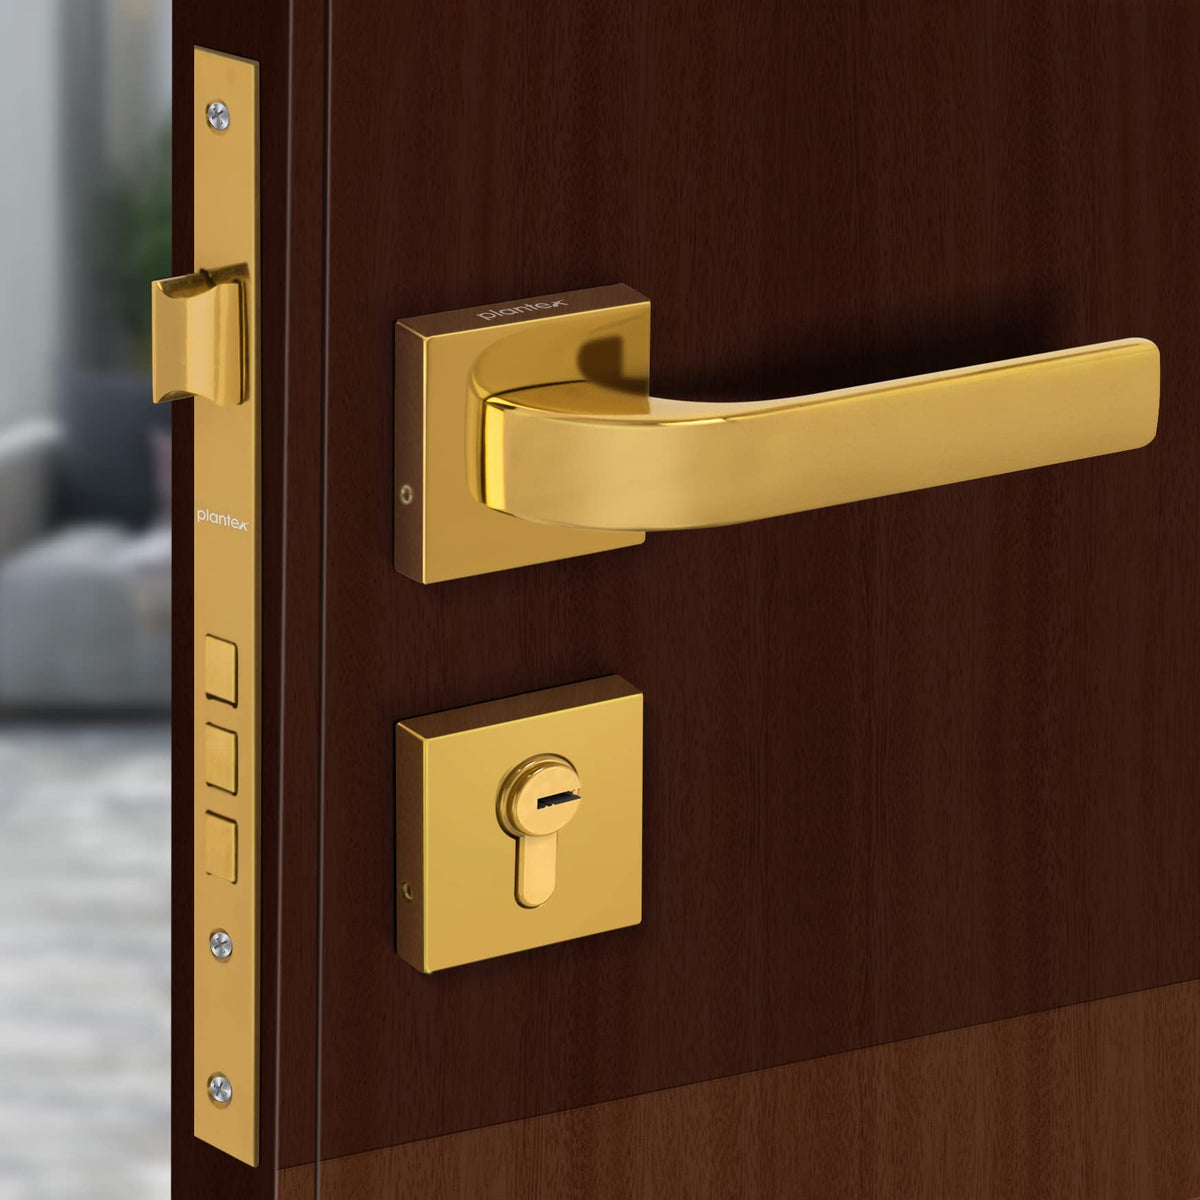 Plantex Heavy Duty Door Lock - Main Door Lock Set with 3 Keys/Mortise Door Lock for Home/Office/Hotel (7107 - Gold)